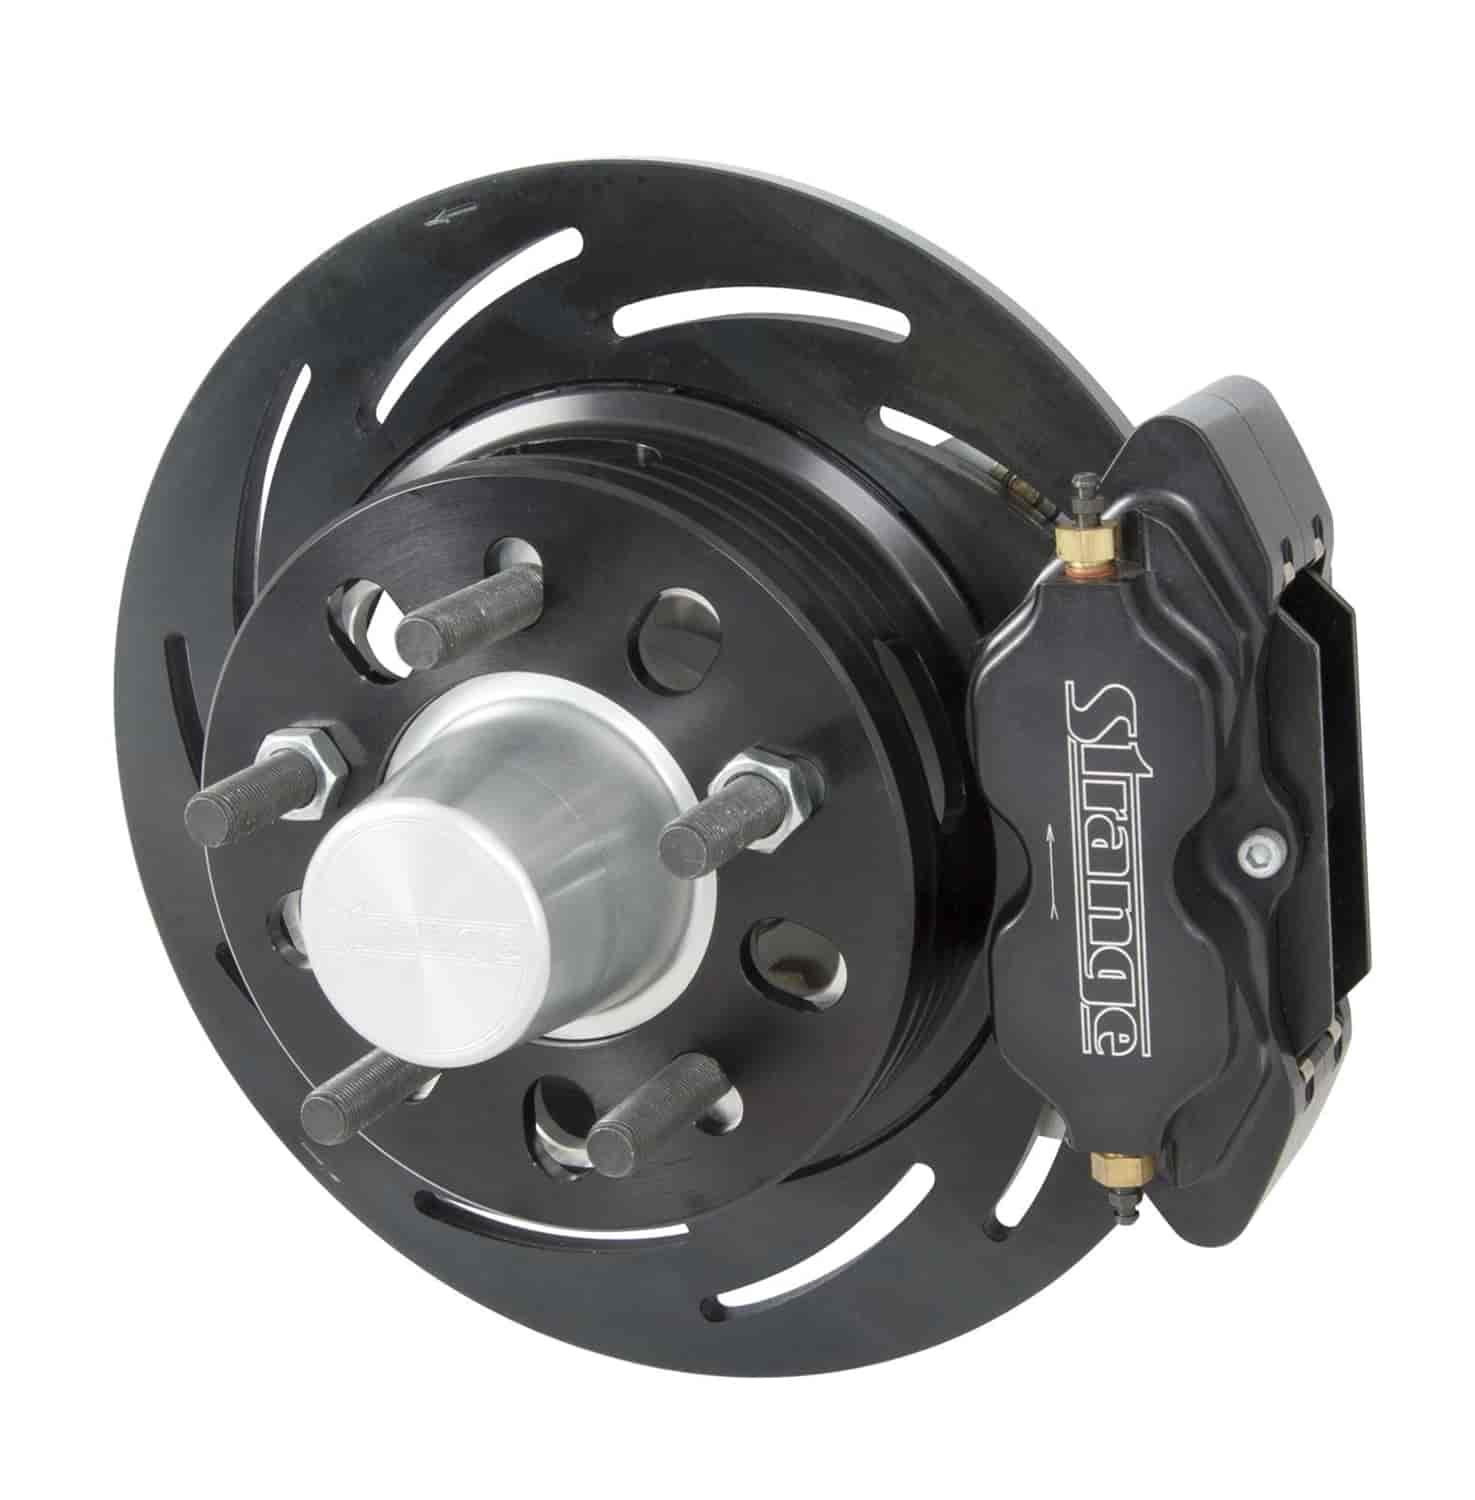 Front brake kit /Mopar disc spindles /4.50 bc /2 pc rotor